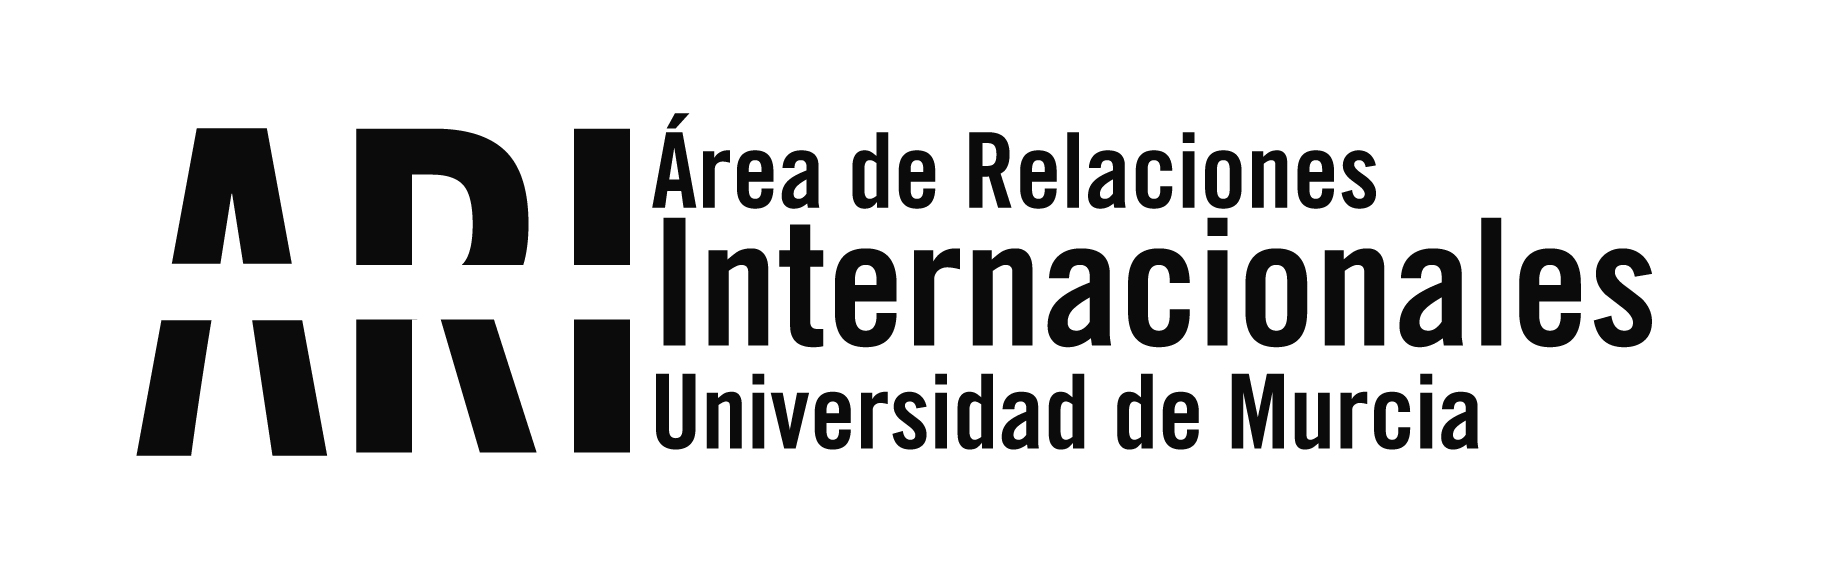 La UMU participa en el 4º Foro de Rectores Ruso e Iberoamericanos celebrado en Sevilla para fomentar la cooperación en Educación e Investigación - Área de Relaciones Internacionales